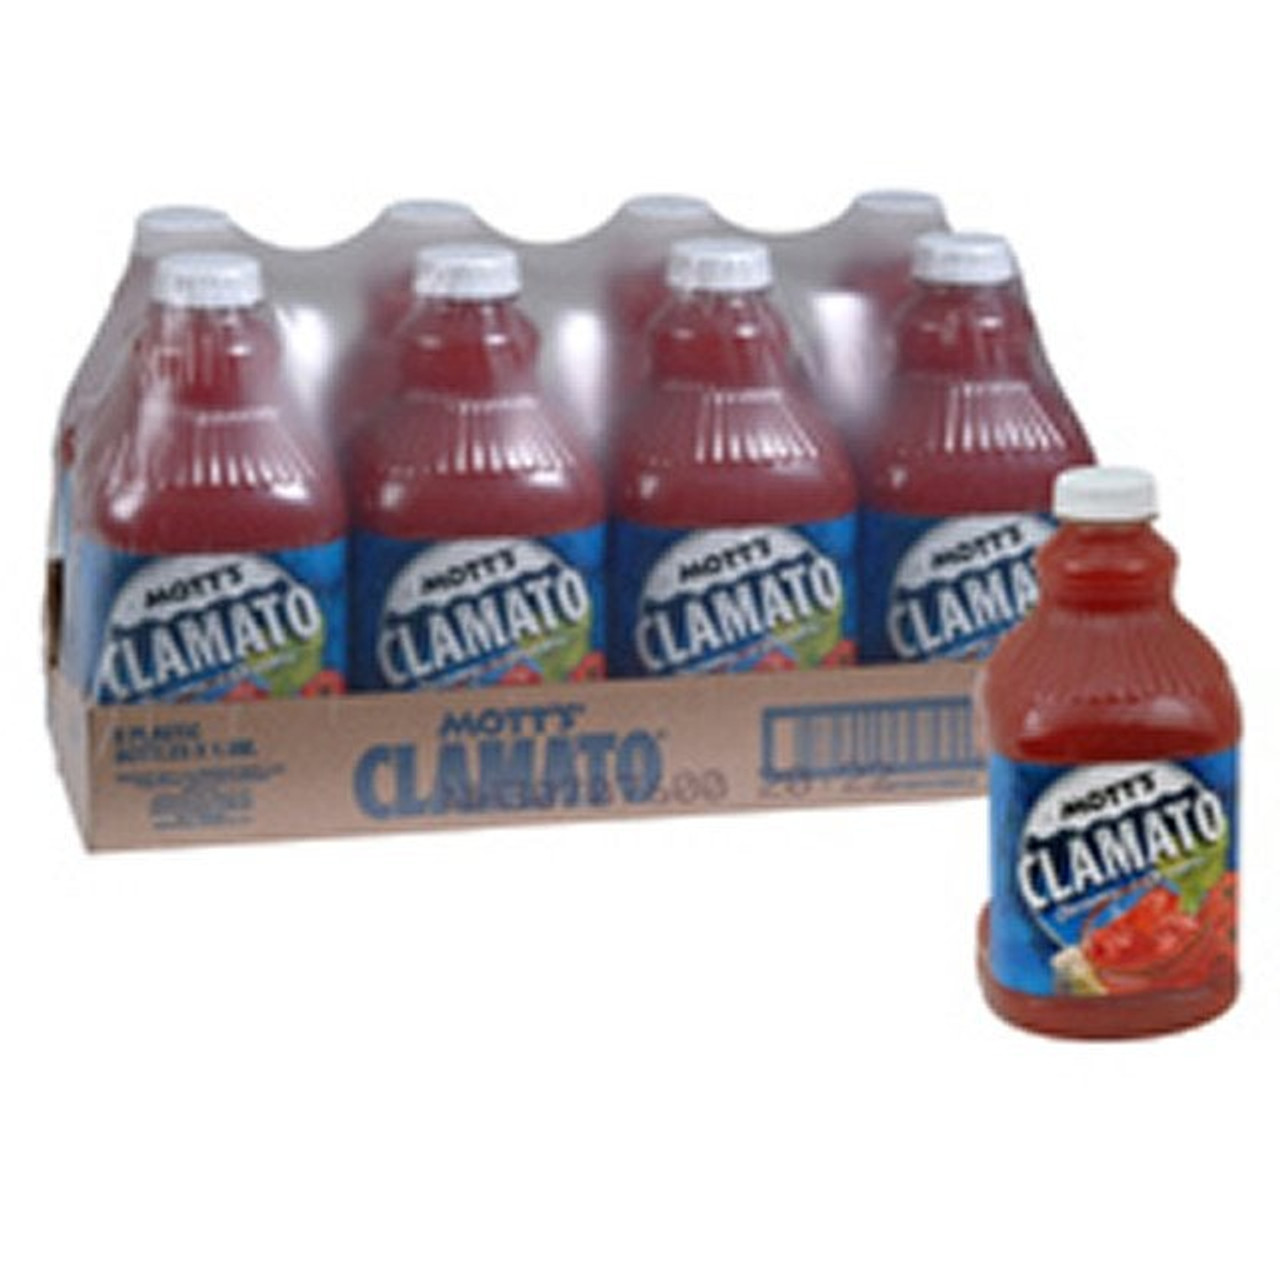 Motts Clamato Cocktail Juice, Polyethylene | 1.89L/Unit, 8 Units/Case